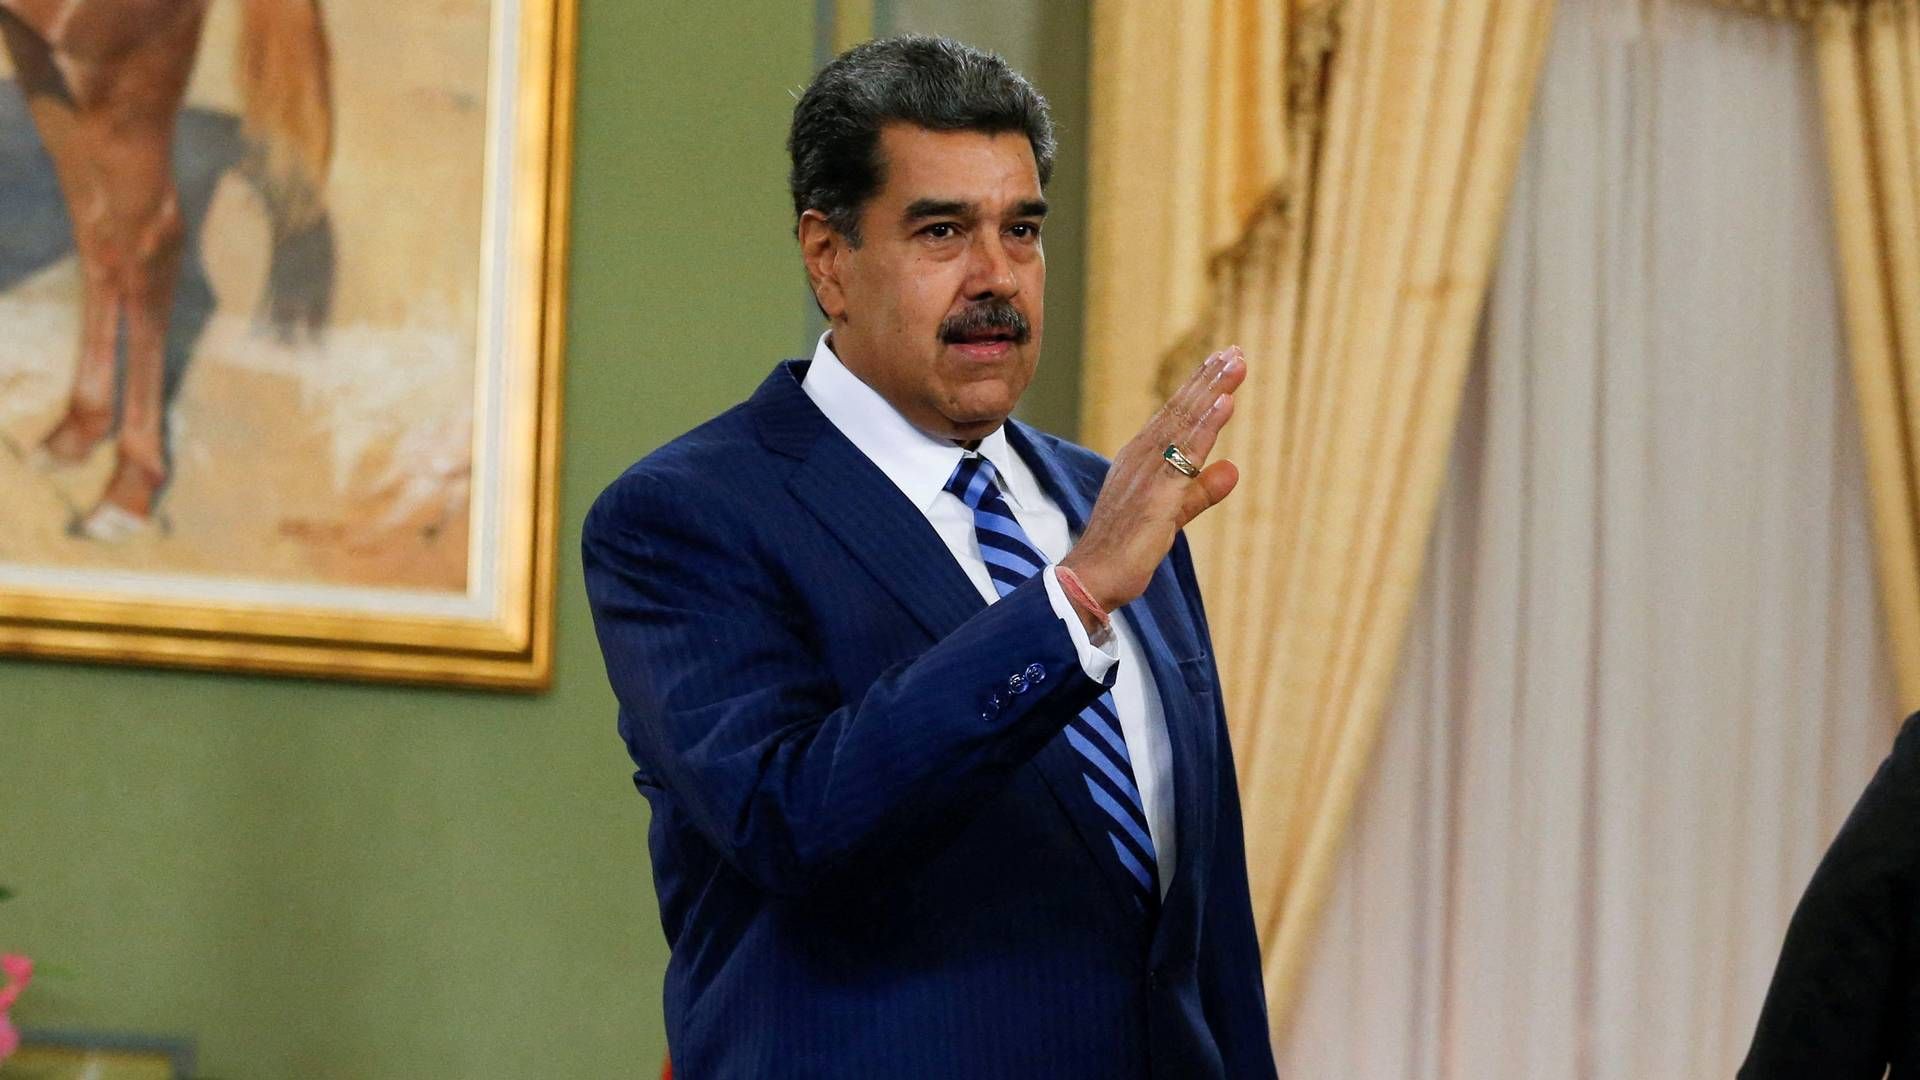 Det seneste præsidentvalg i Venezuela var i 2018, hvor Nicolas Maduros sejr bliver betragtet af USA og det internationale som svindel. | Foto: Leonardo Fernandez Viloria/Reuters/Ritzau Scanpix